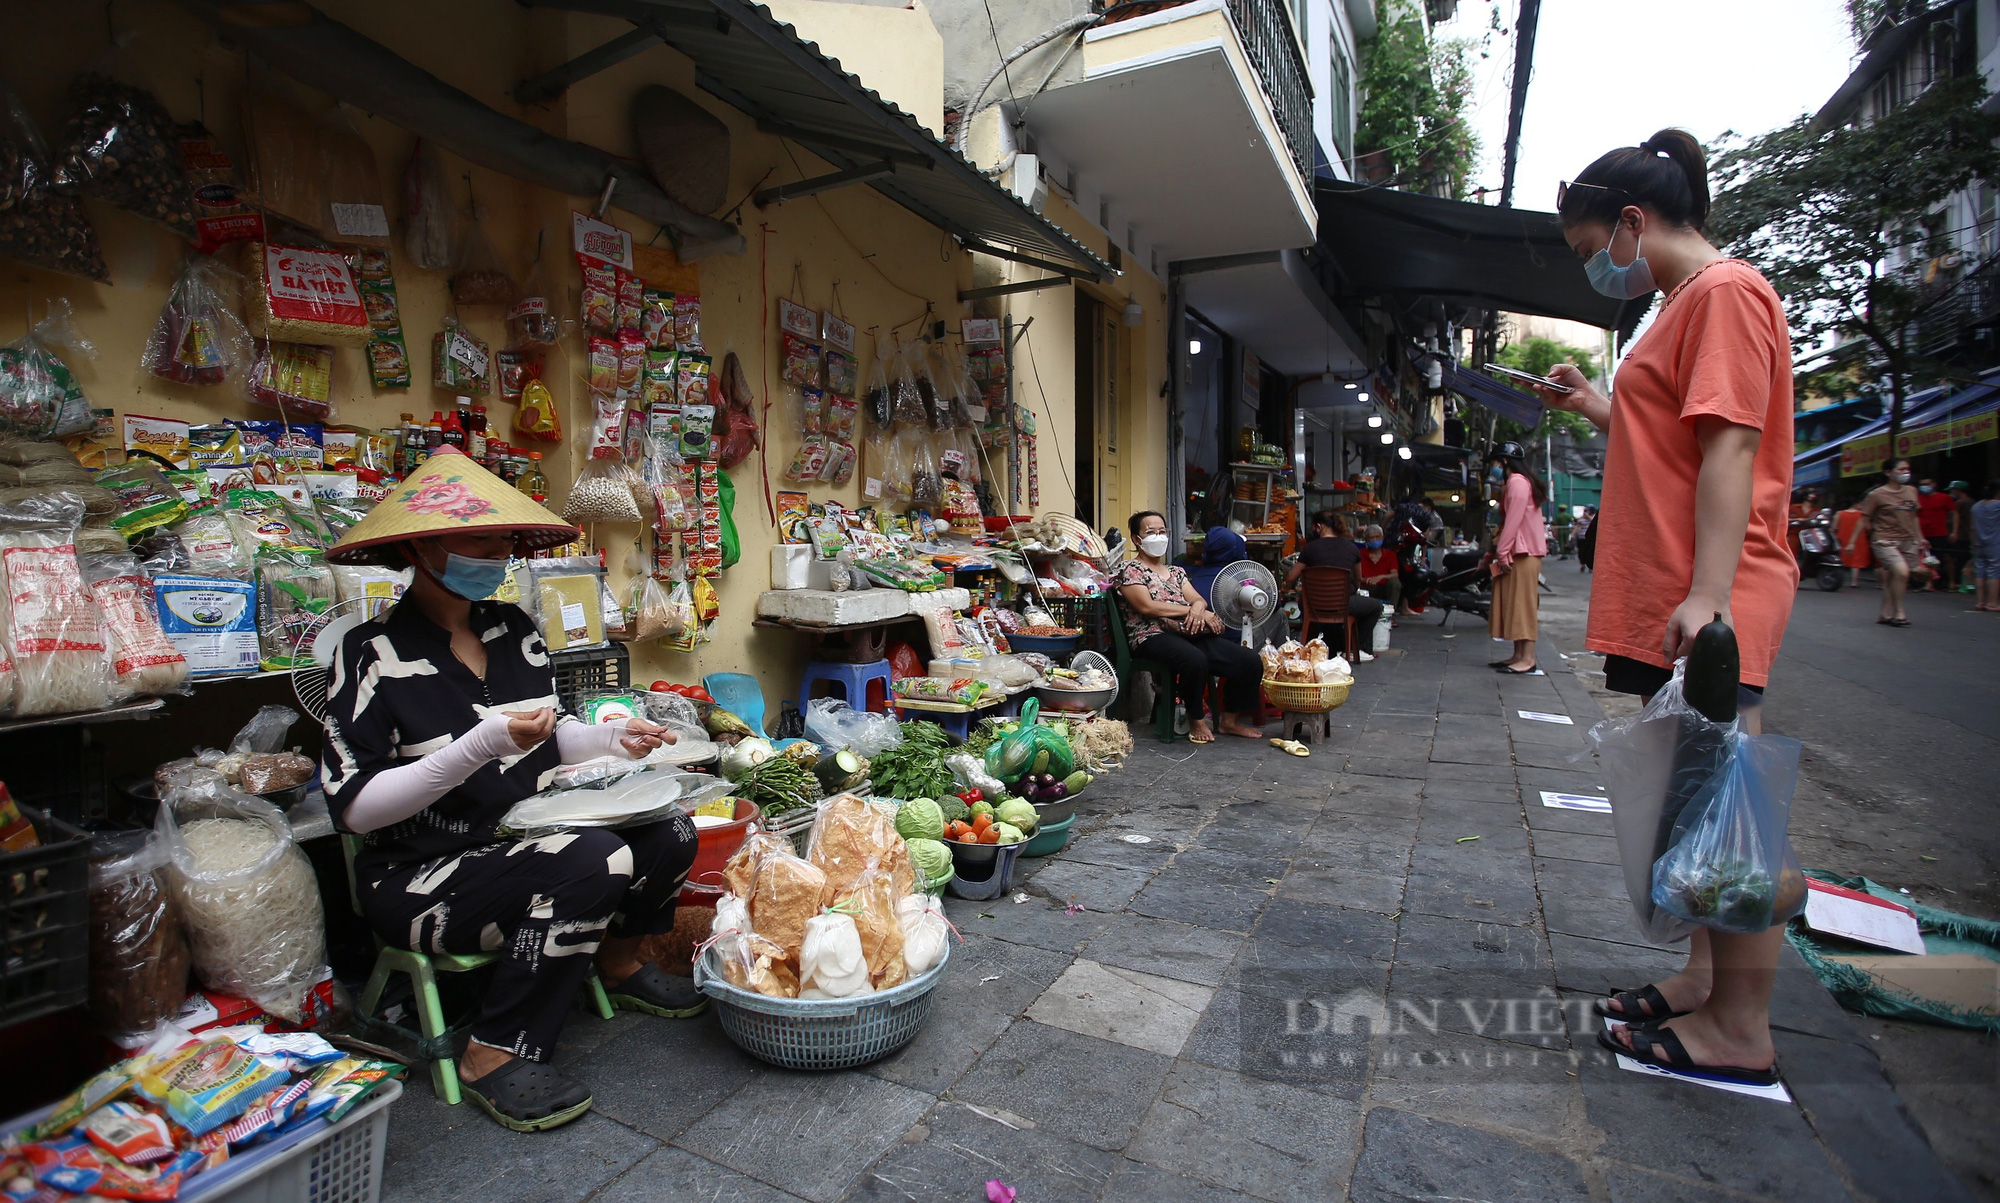 Áp dụng Chỉ thị 16 ở Hà Nội: Cả hai vợ chồng cùng đi ra chợ mua lương thực có bị xử phạt không? - Ảnh 1.